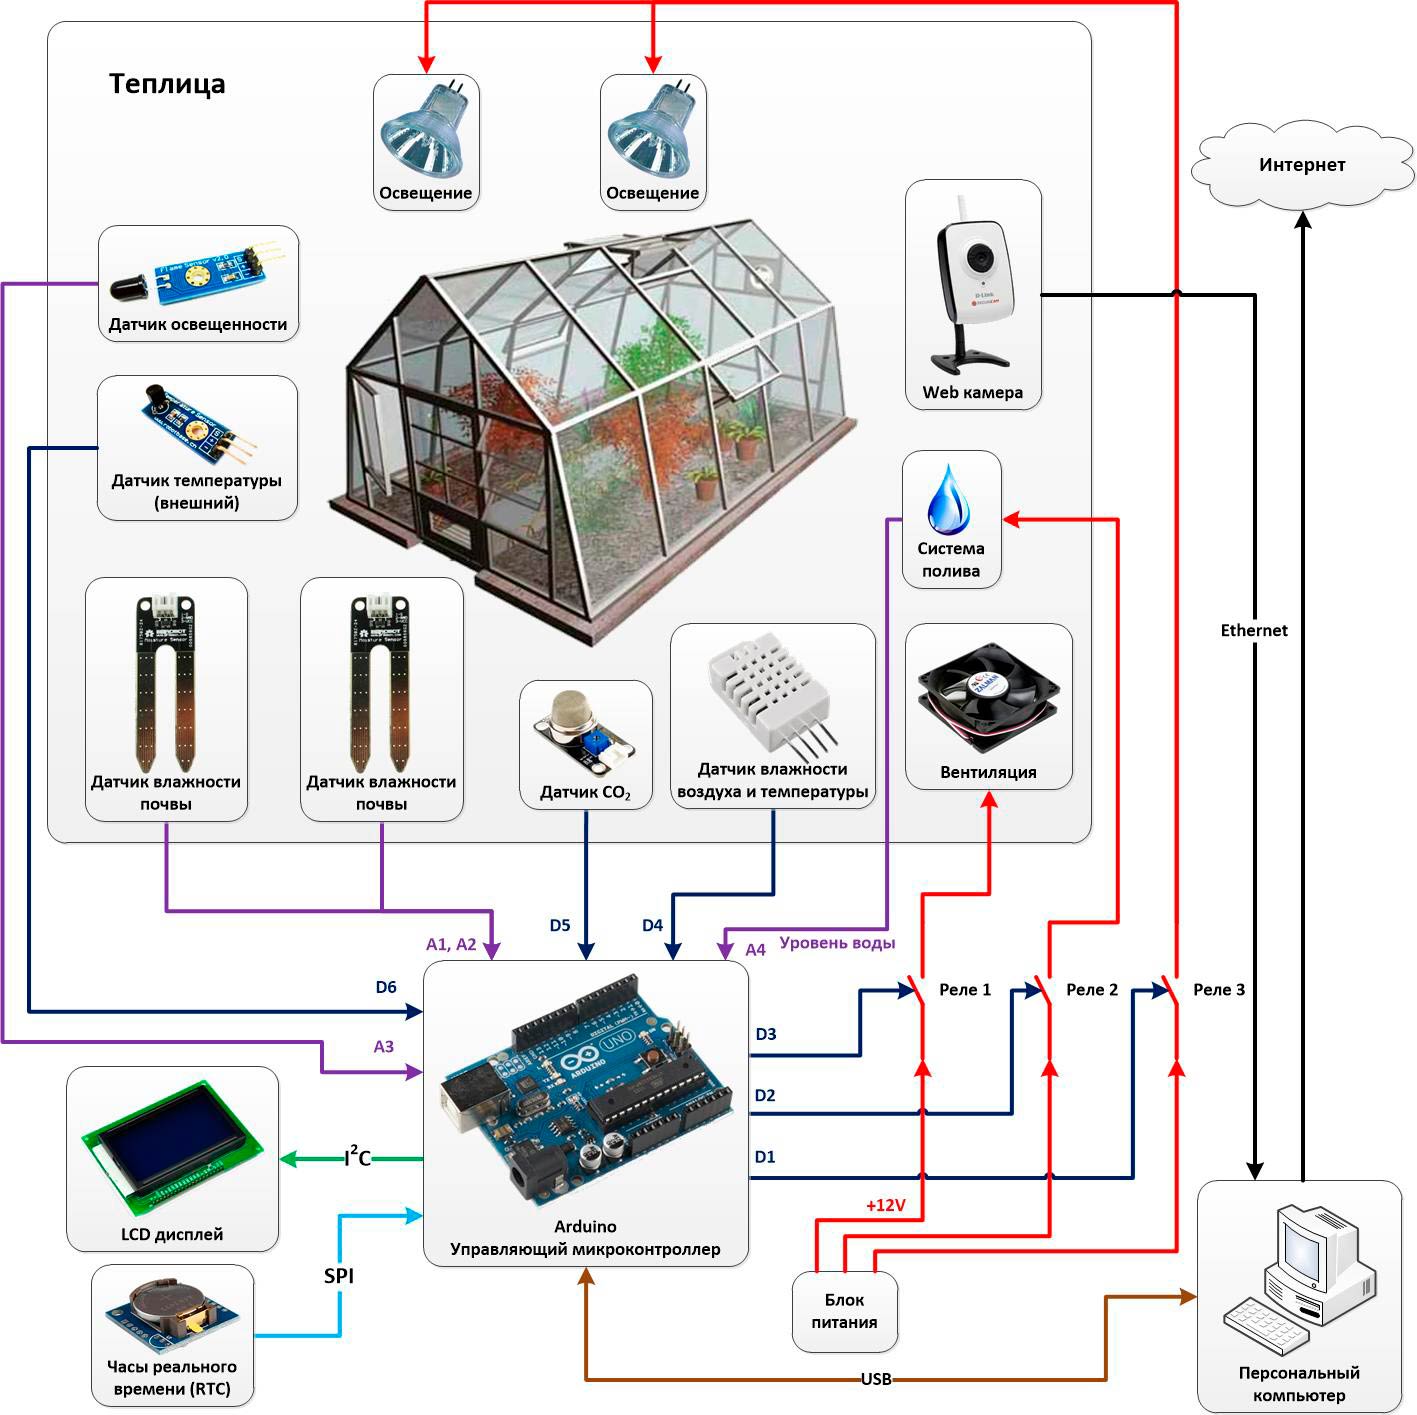 Готовые проекты умных теплиц на arduino своими руками - автоматизация / умный контроллер теплицы: как автоматизировать системы